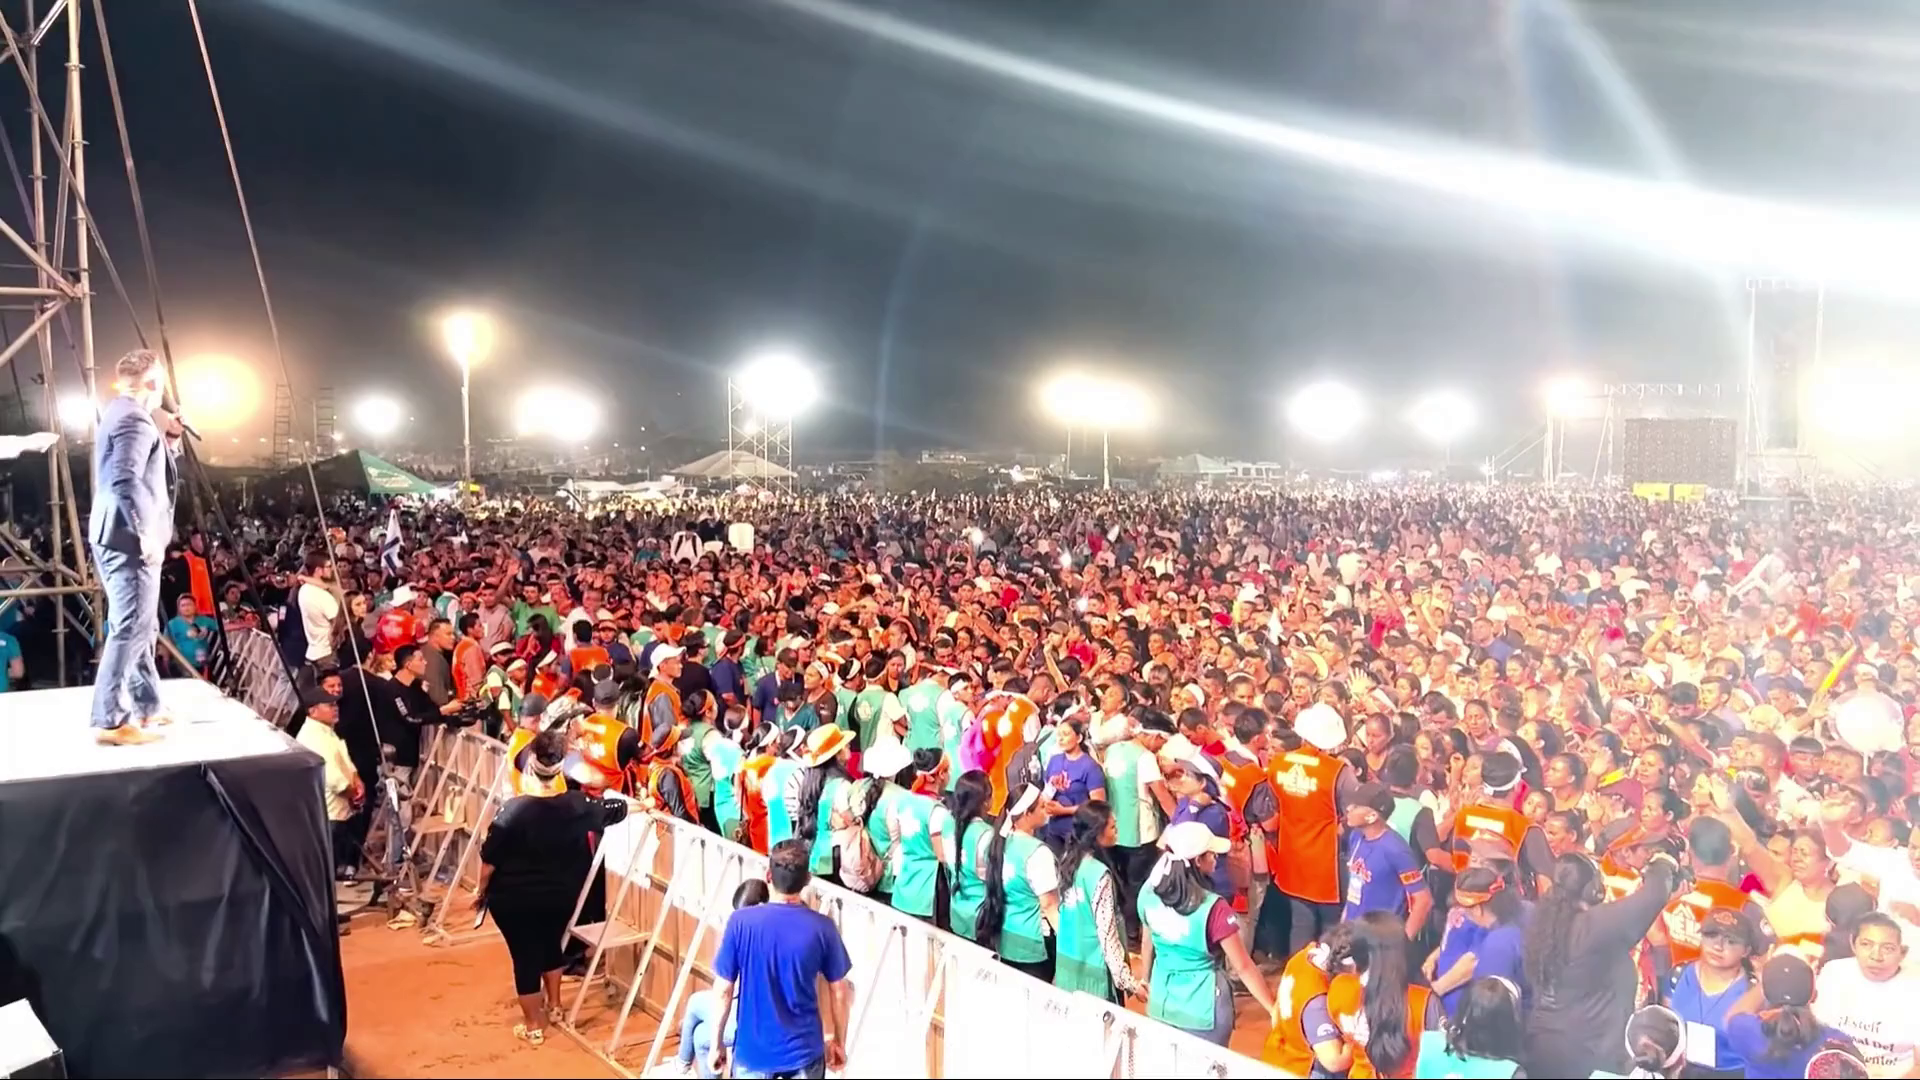 Mass Evangelism Surprises Nicaragua